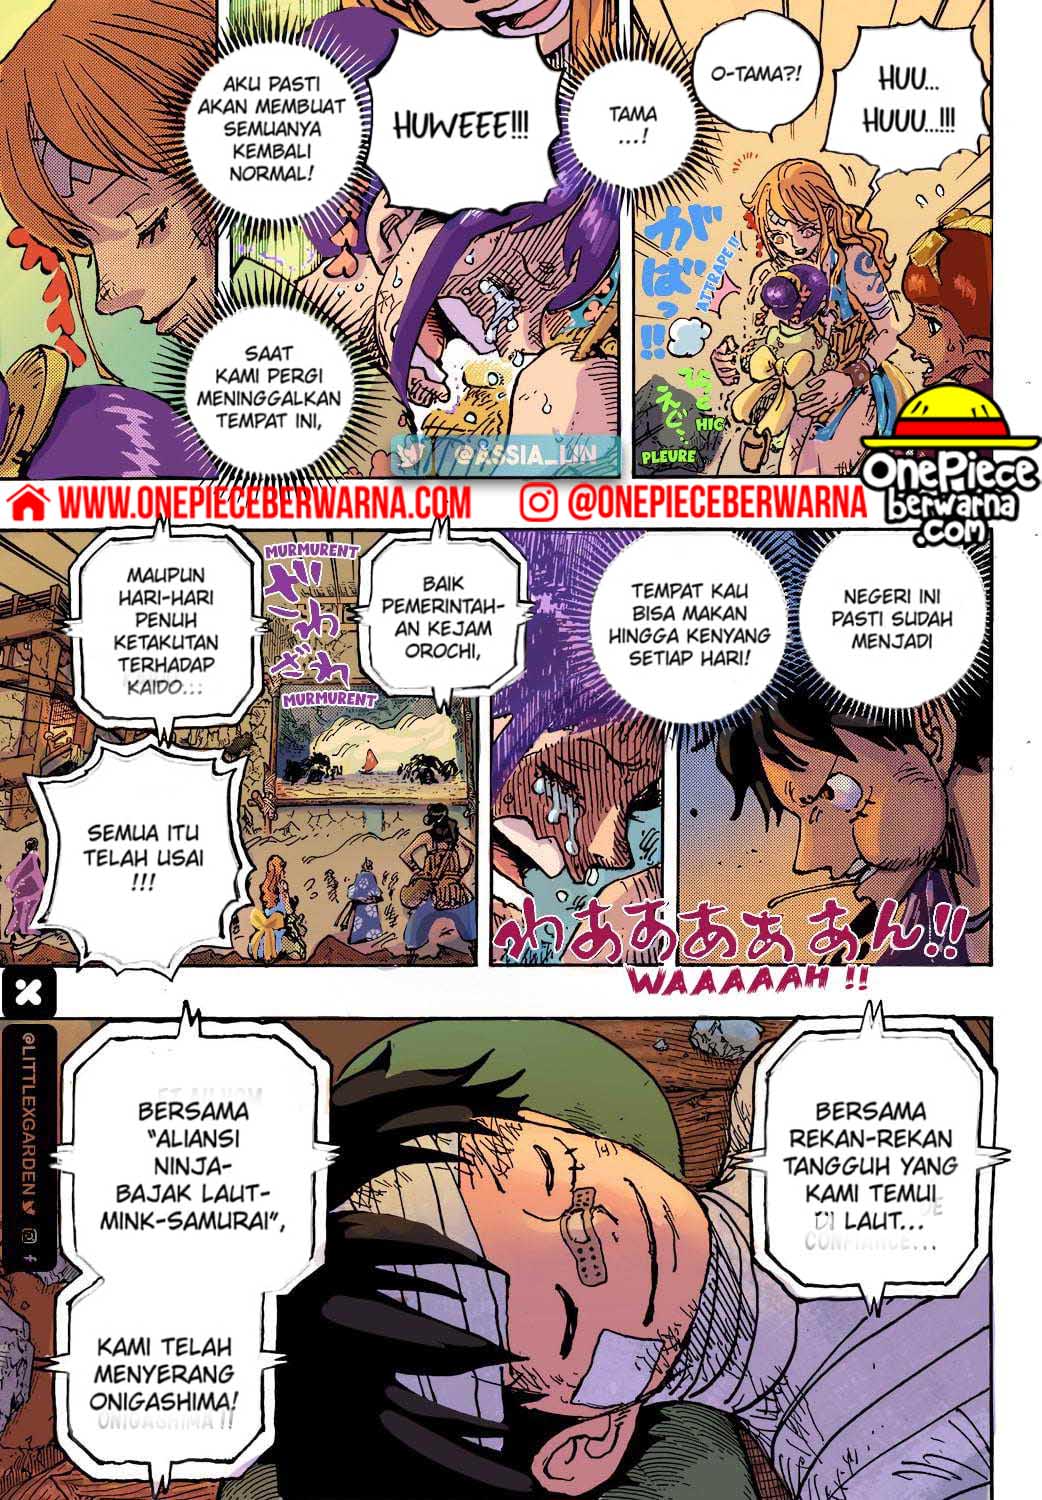 One Piece Berwarna Chapter 1051